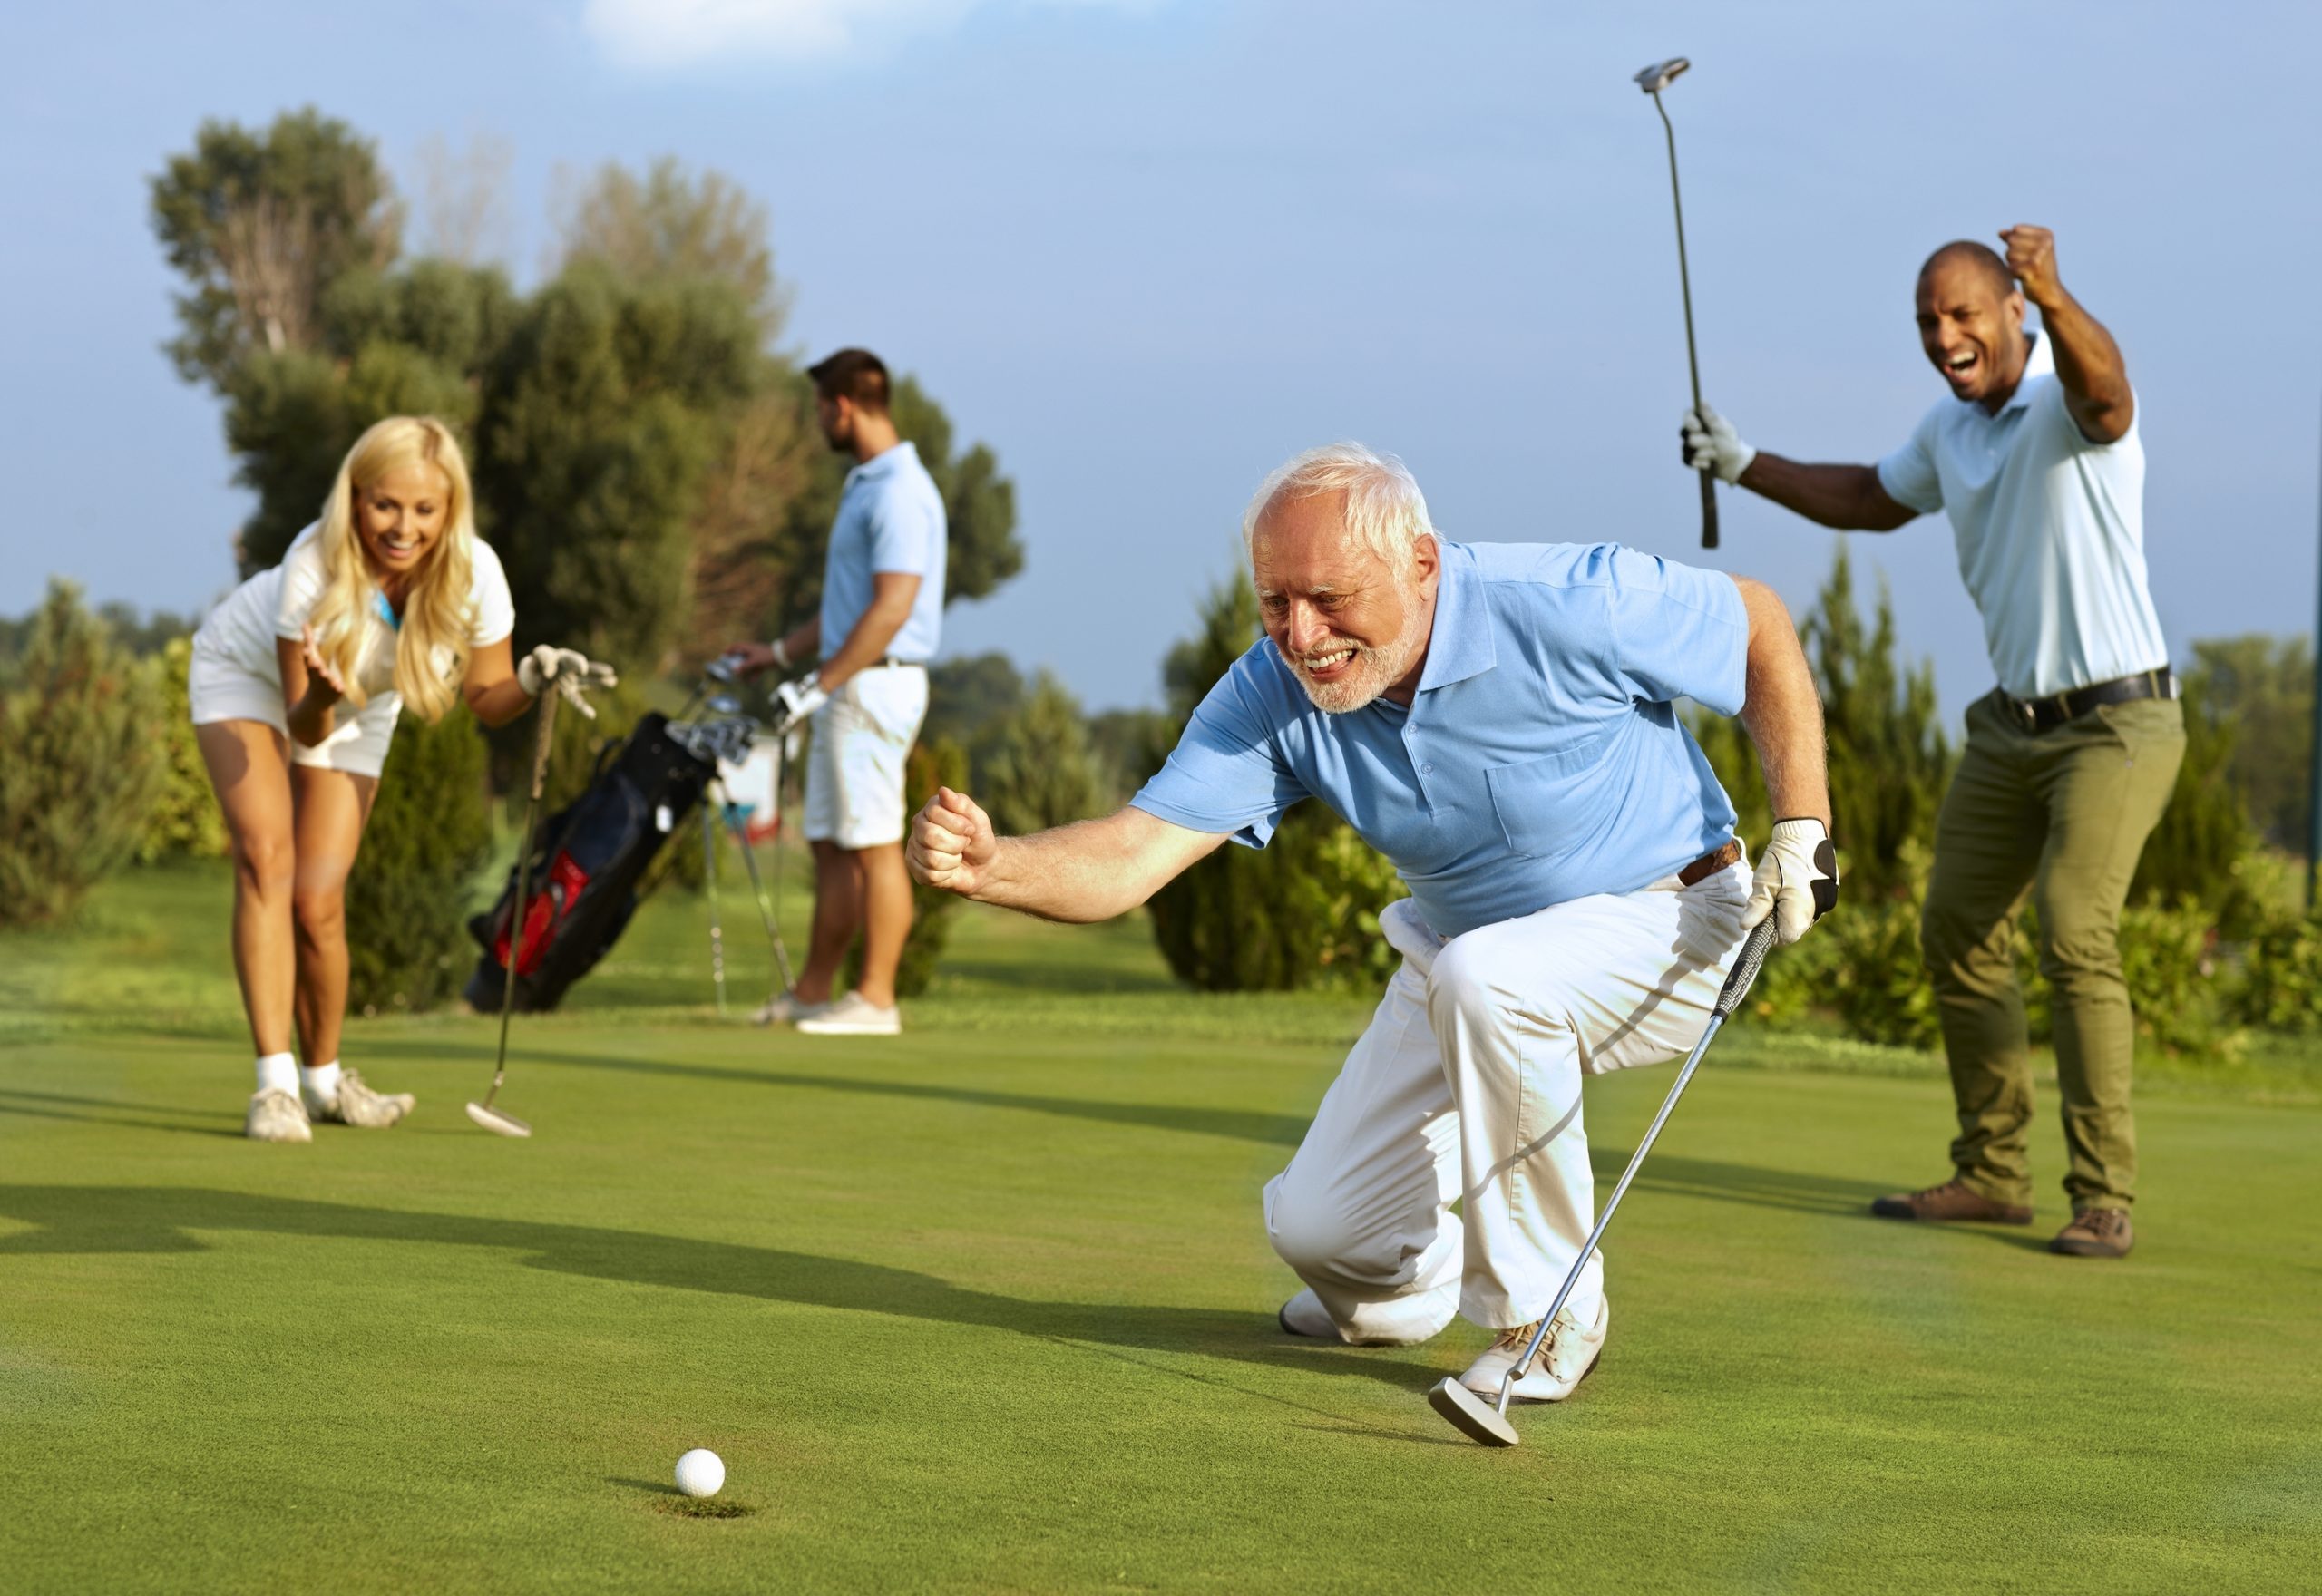 IV. Social Benefits of Golf for Seniors